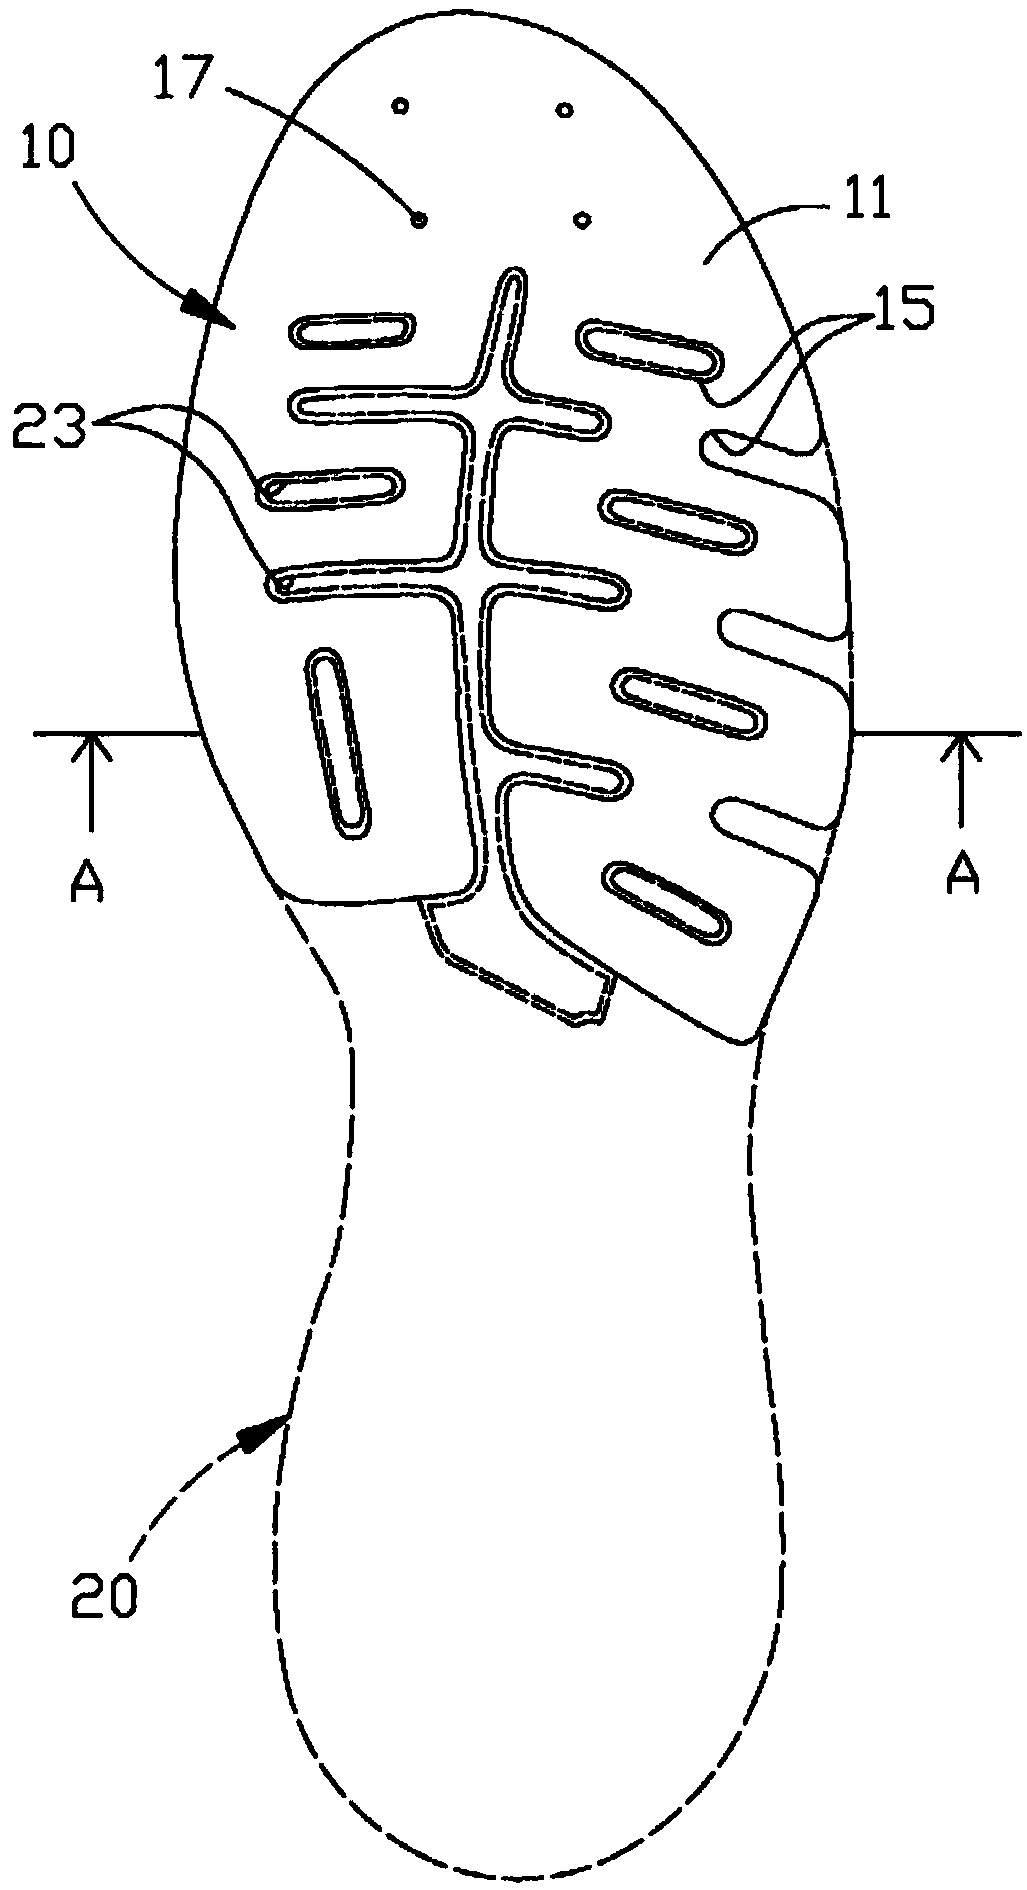 Wear-resisting non-slip sole structure